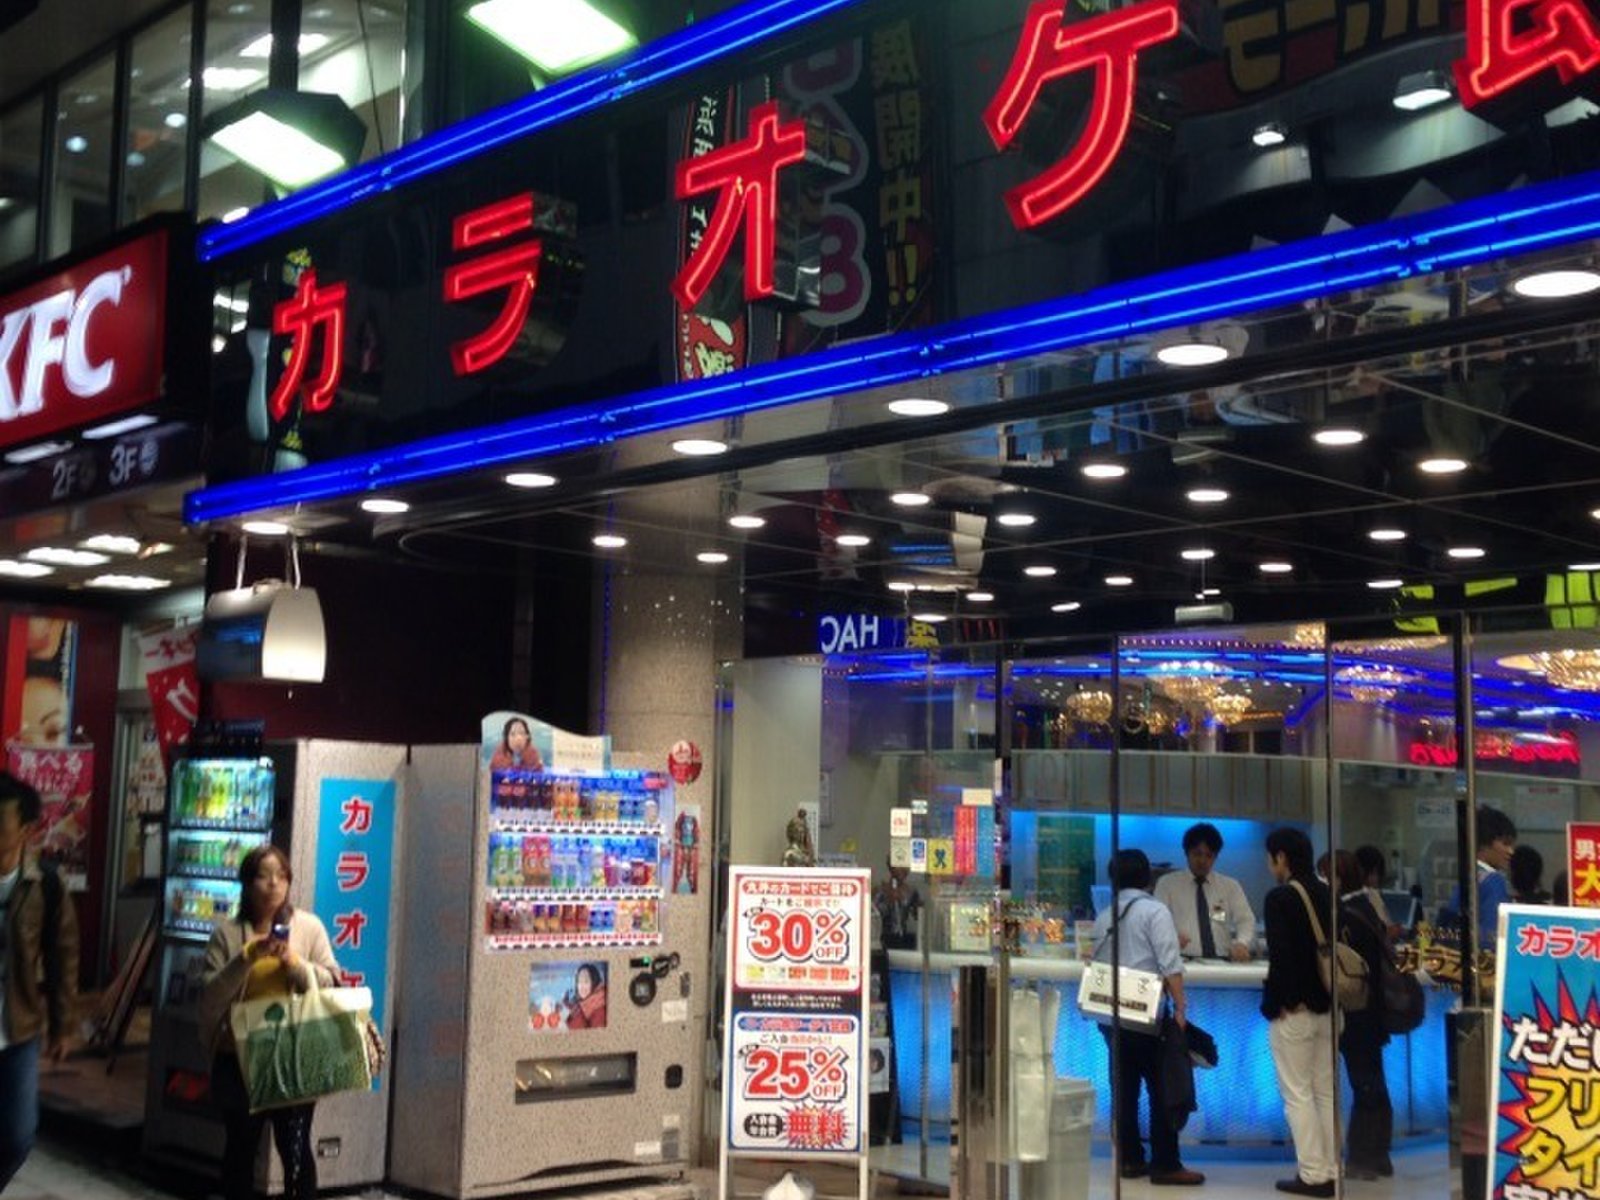 横浜 カラオケ店をお探しならここ コスパが良い おすすめの10店をご紹介します Playlife プレイライフ